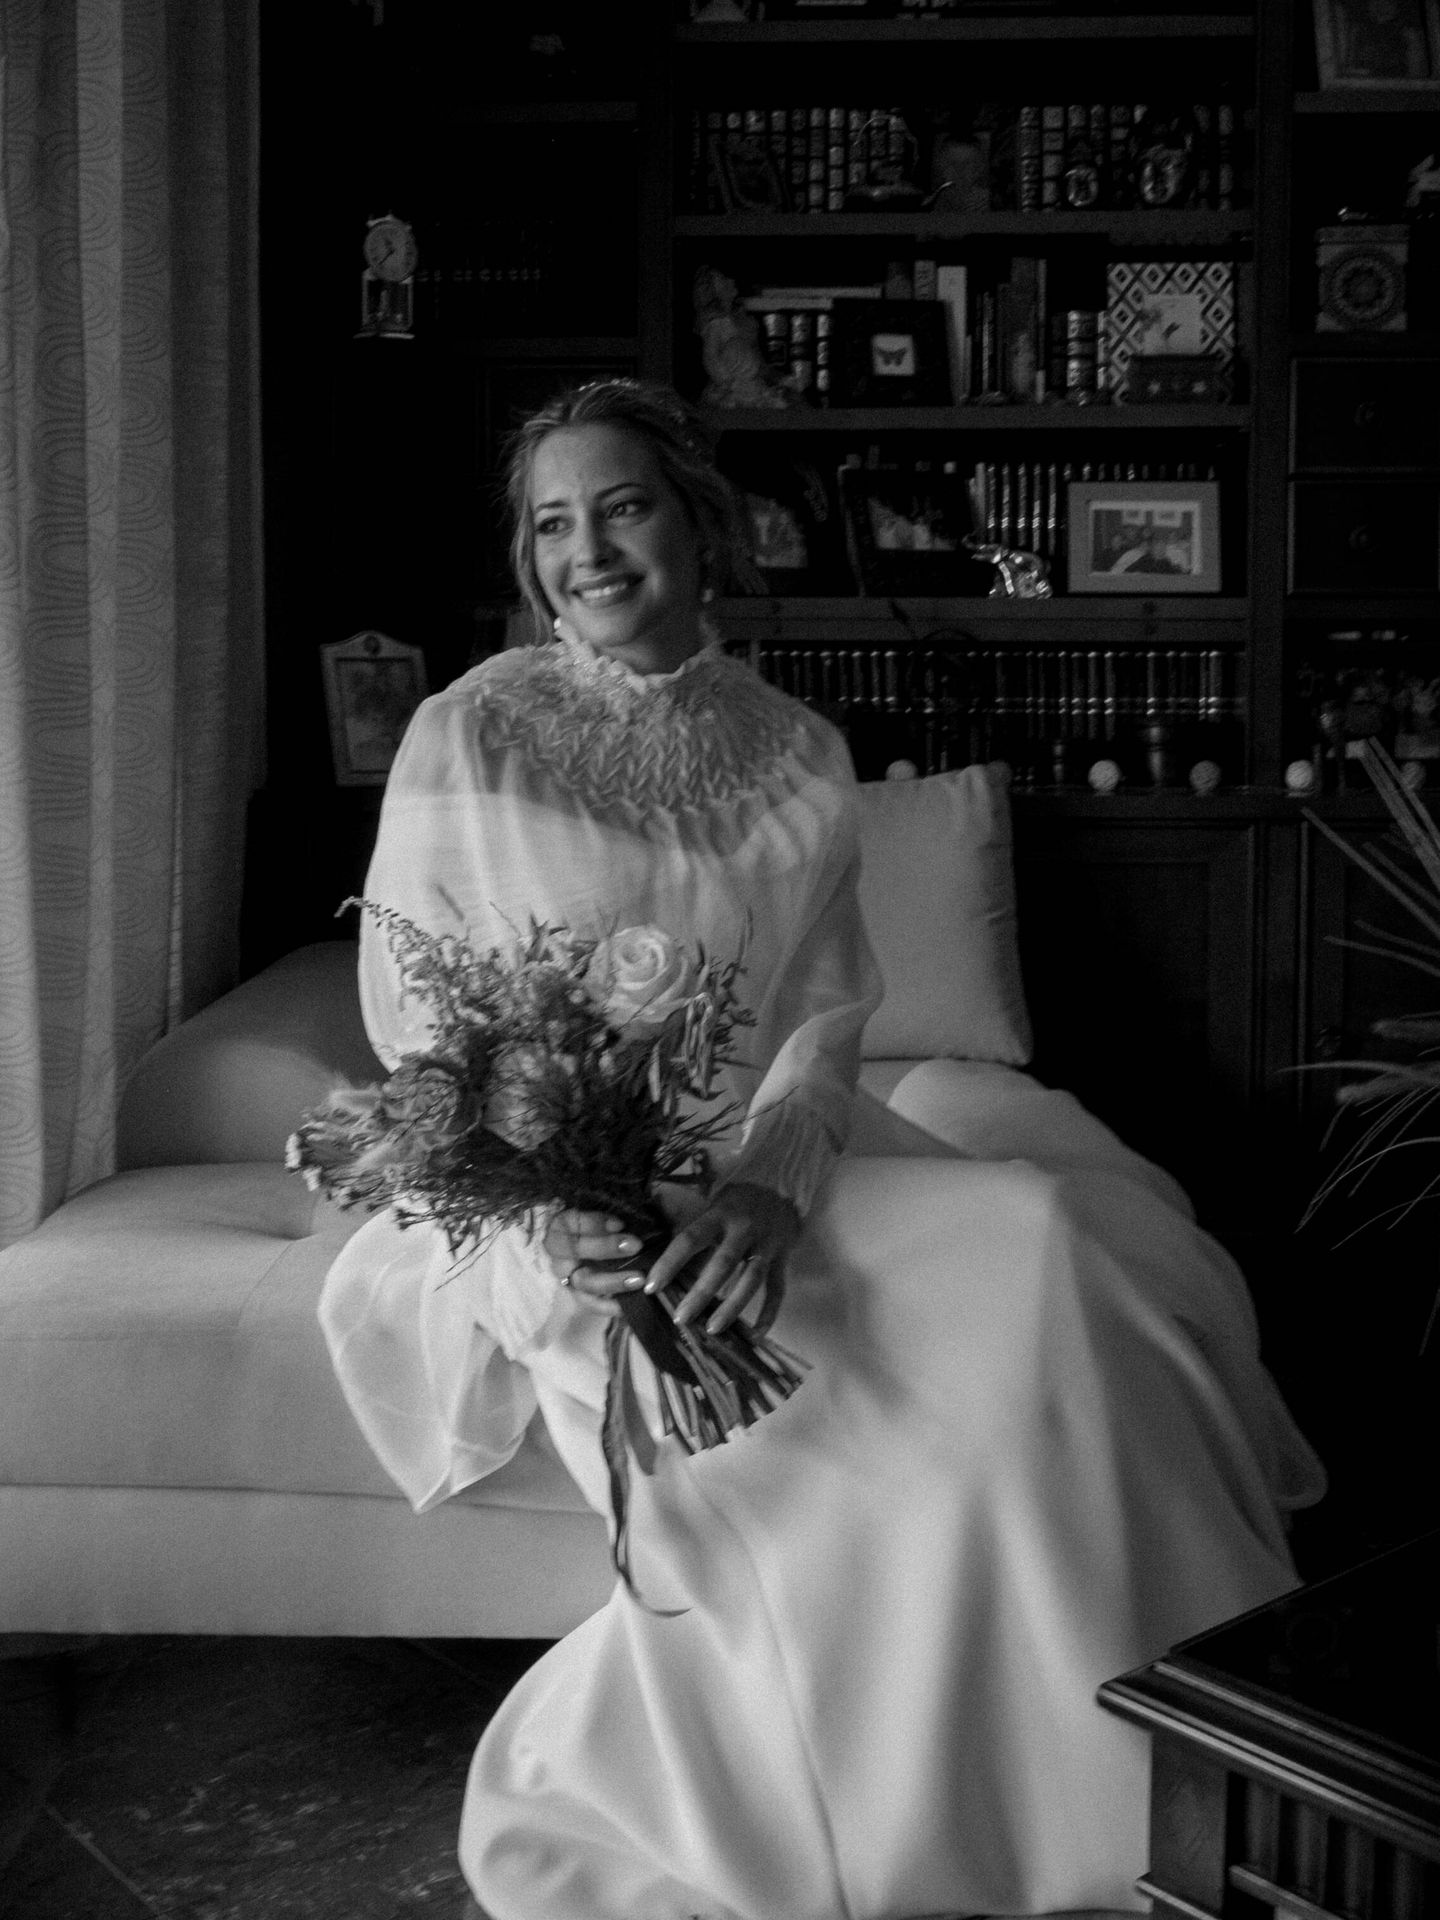 Virginia el día de su boda en Málaga. (Ópalo Photos)